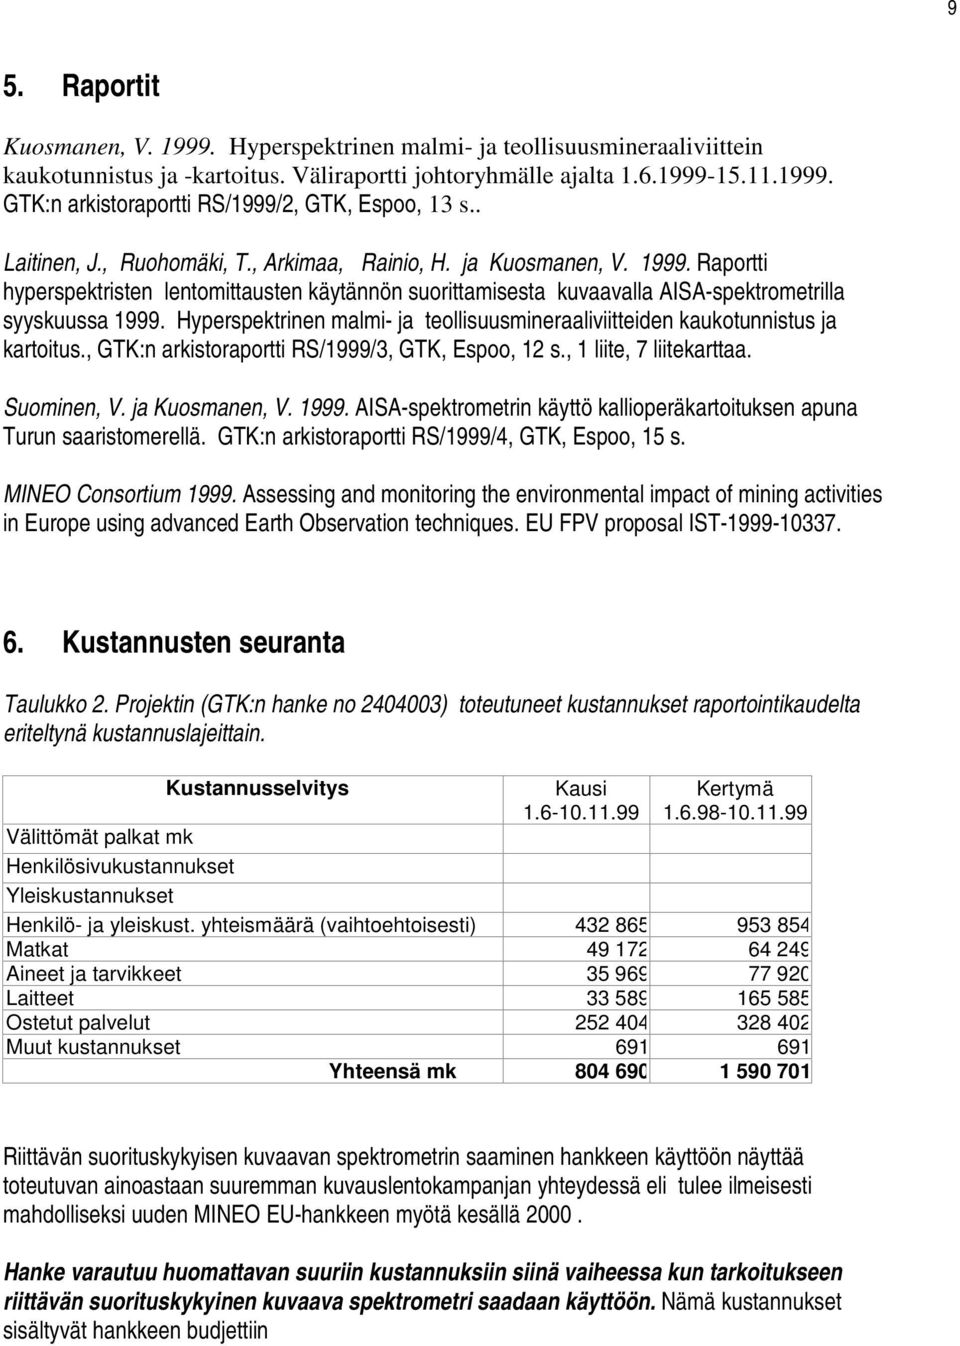 Hyperspektrinen malmi- ja teollisuusmineraaliviitteiden kaukotunnistus ja kartoitus., GTK:n arkistoraportti RS/1999/3, GTK, Espoo, 12 s., 1 liite, 7 liitekarttaa. Suominen, V. ja Kuosmanen, V. 1999.